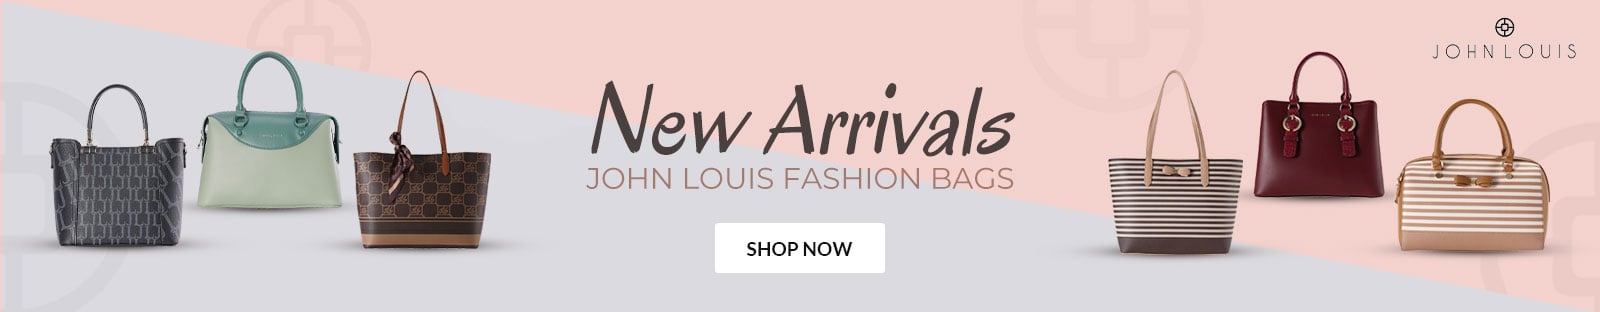 Online - John Louis Fashion Bags Web